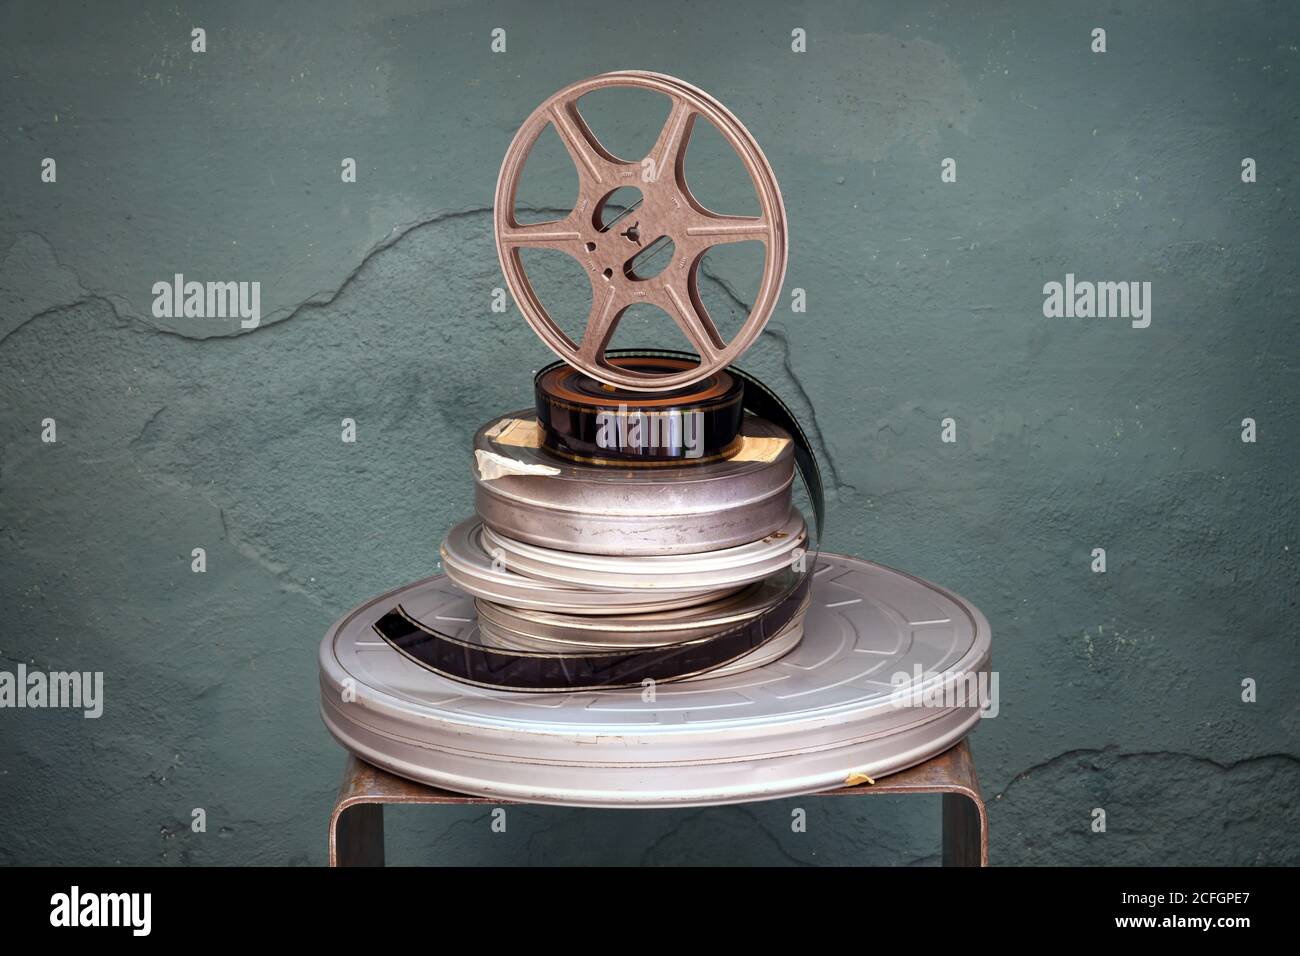 Vieux films d'époque empilés de diamètres variés avec un rouleau de projecteur debout sur un dessus vert texturé arrière-plan avec vignette Banque D'Images